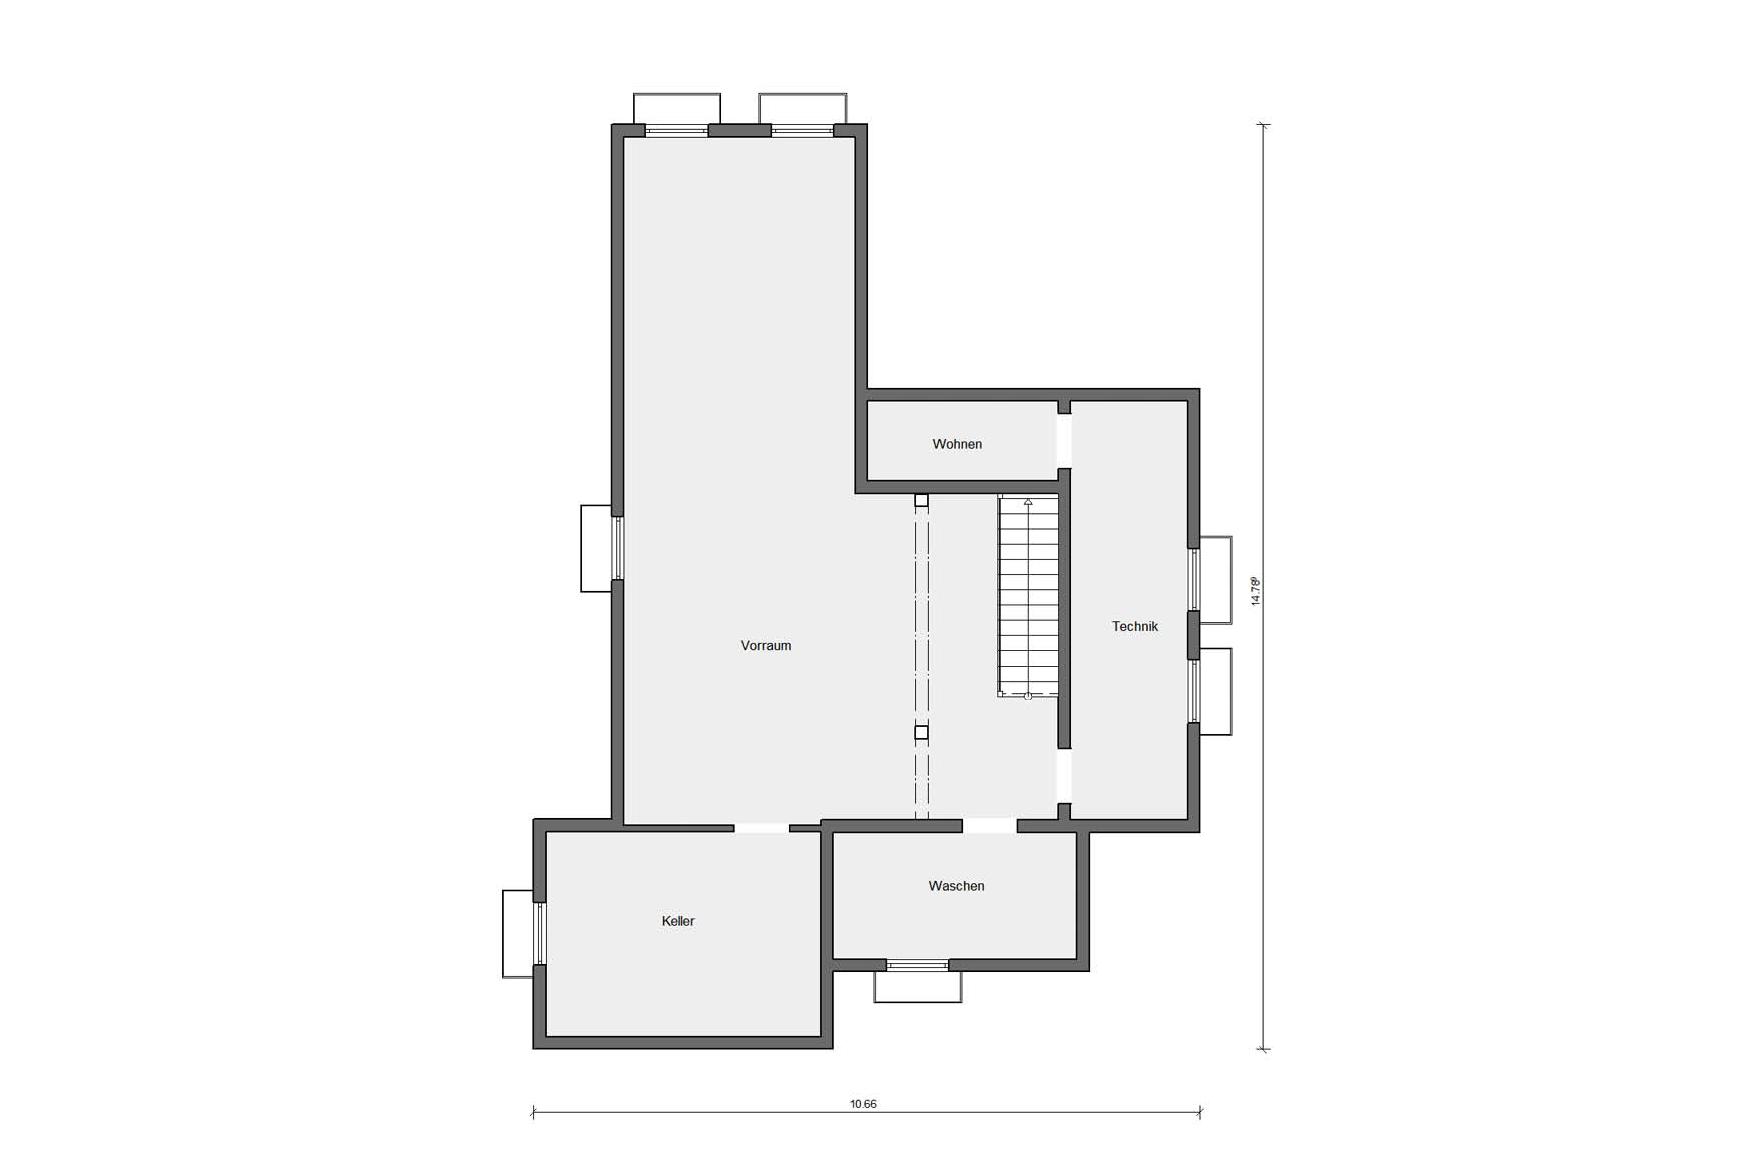 Pianta seminterrato casa unifamiliare in stile Bauhaus con tetto piano E 20-207.1